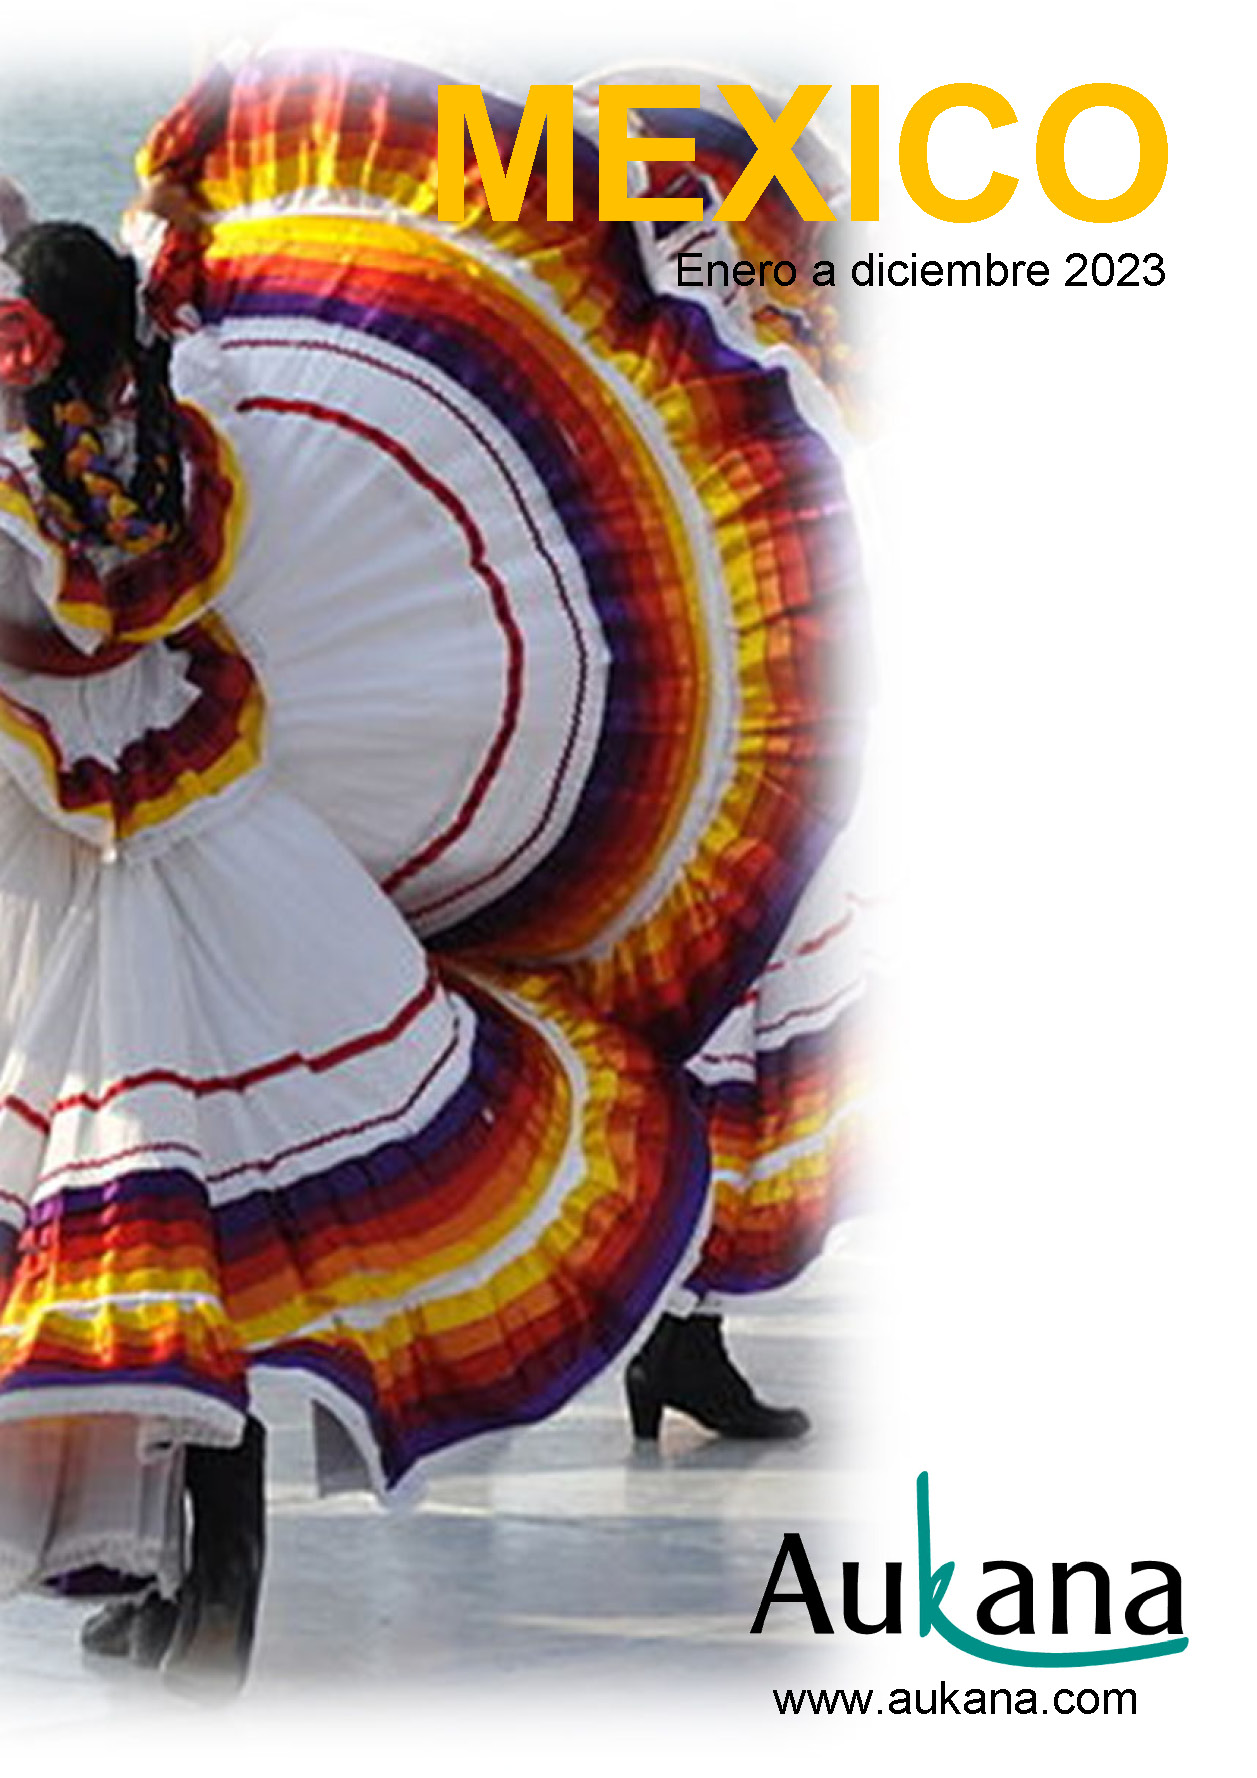 Catalogo Aukana Travel Mexico 2023